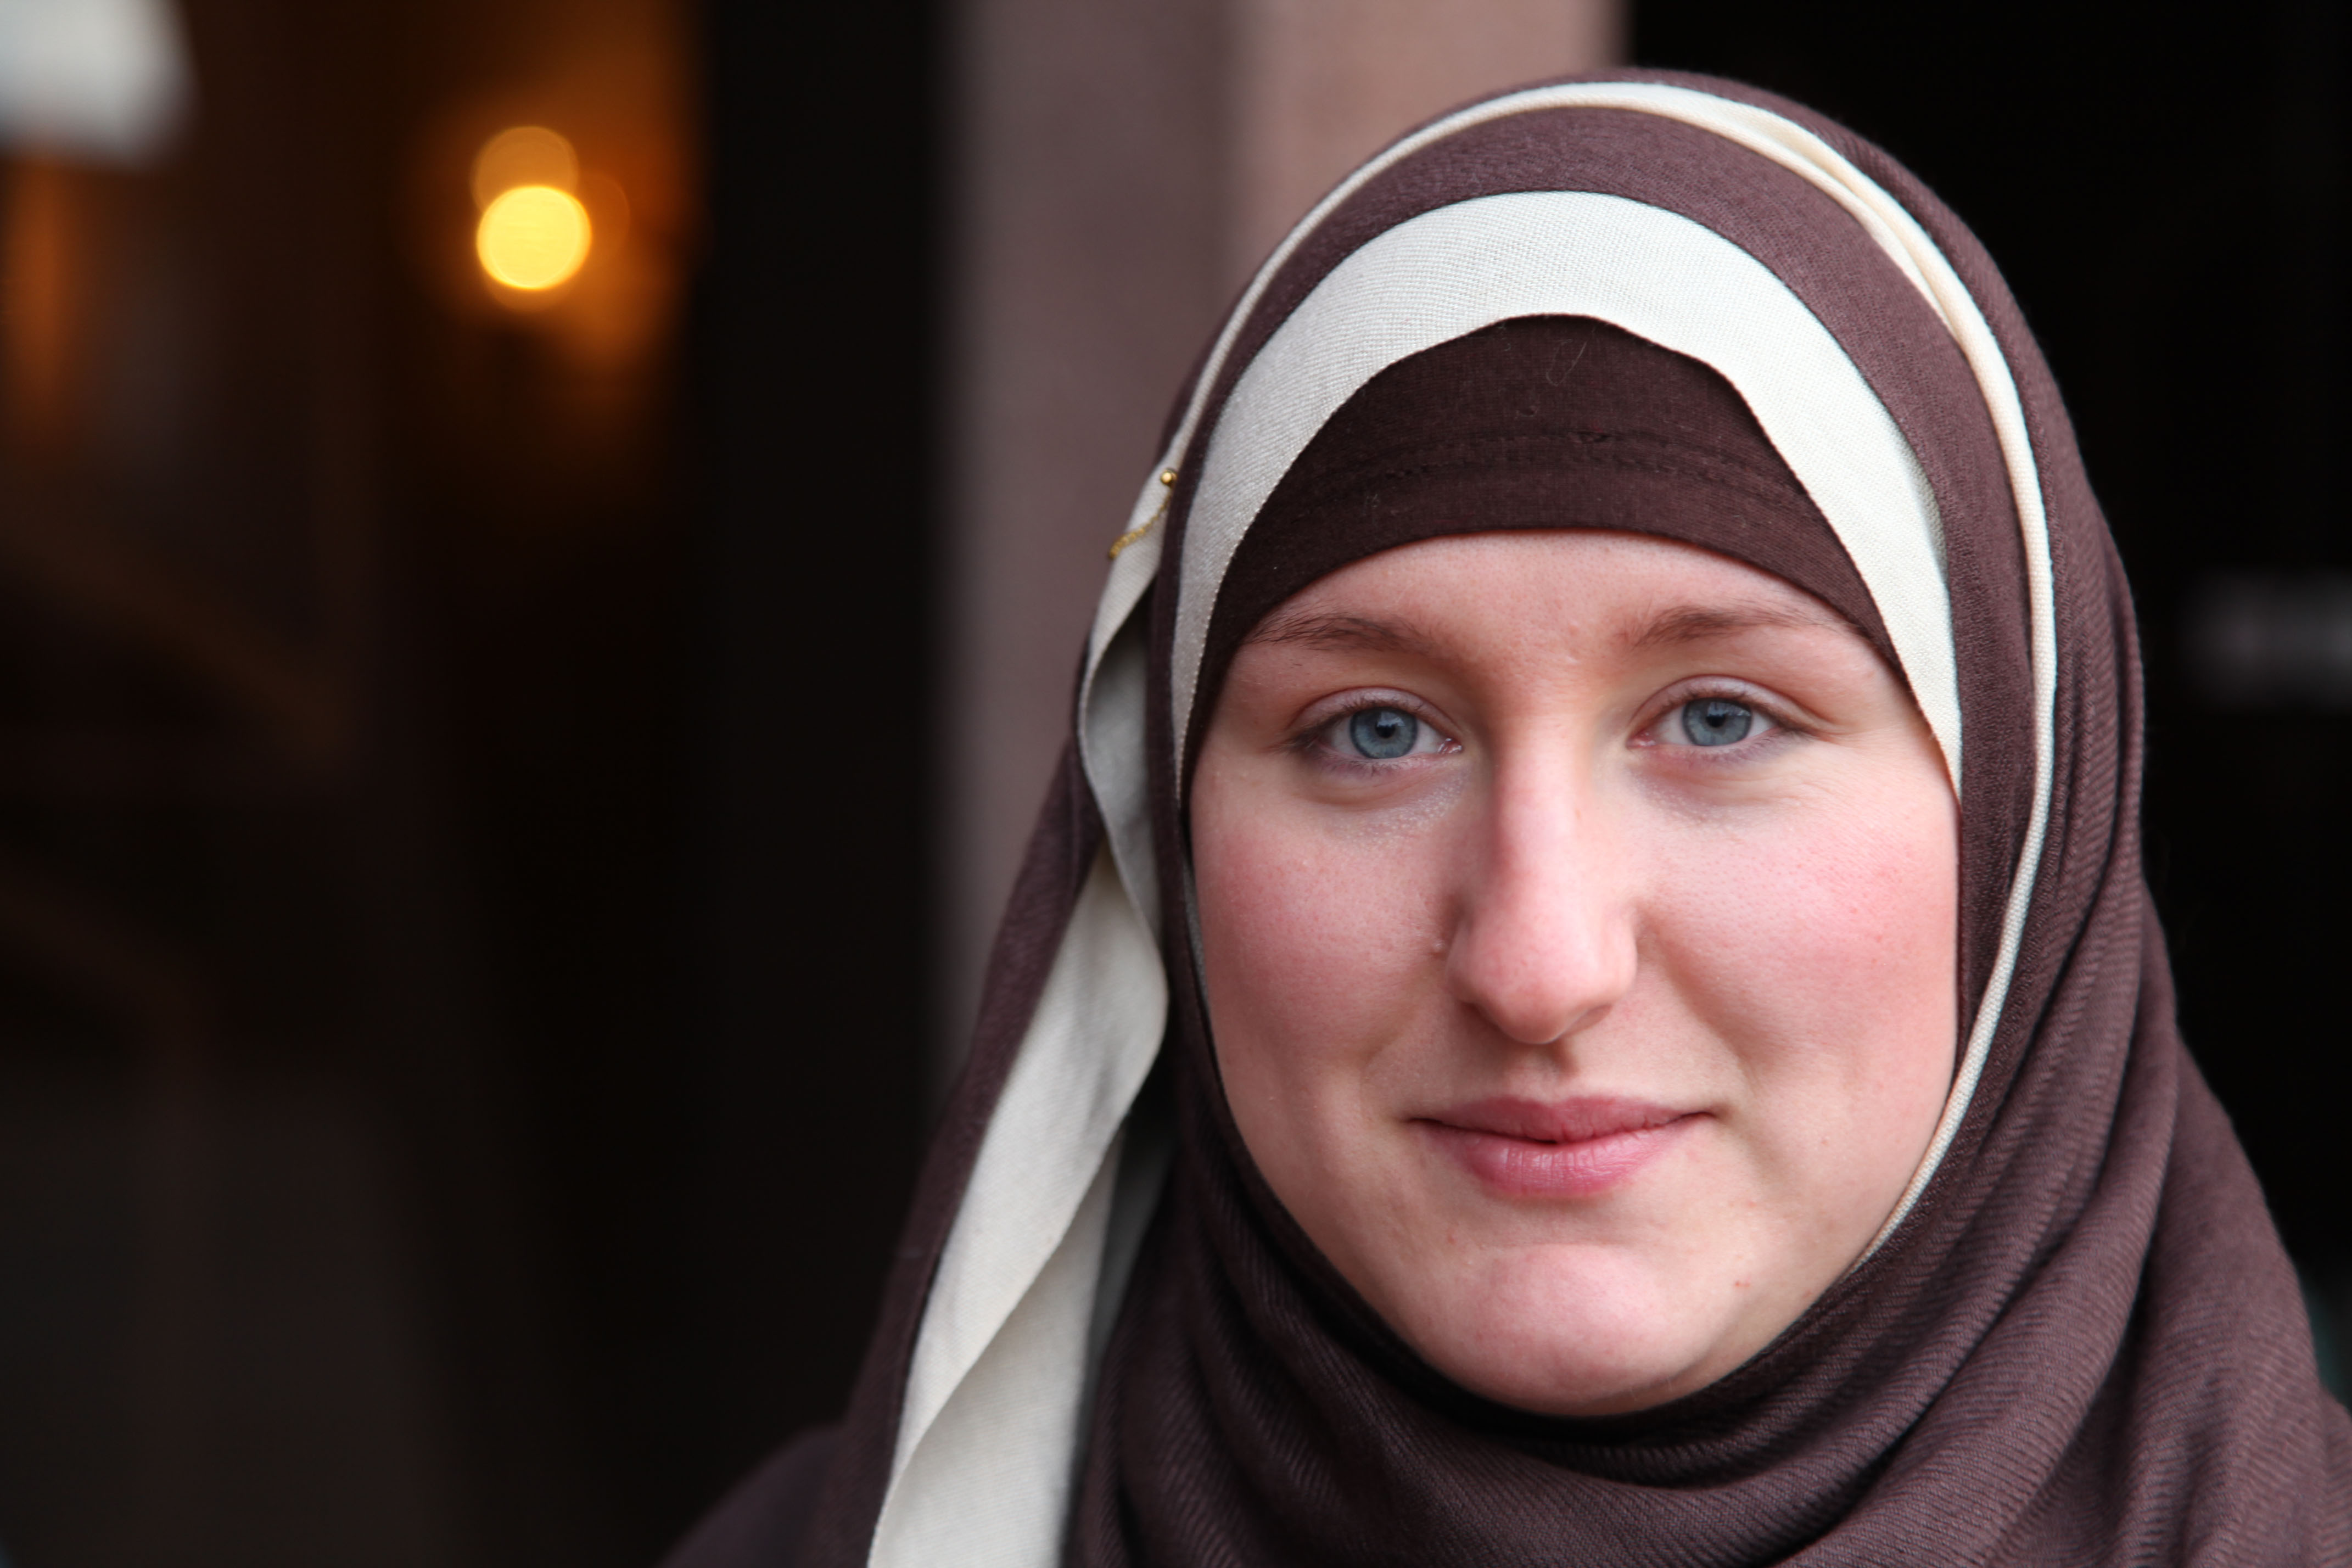 Female converts finding true feminism in Islam